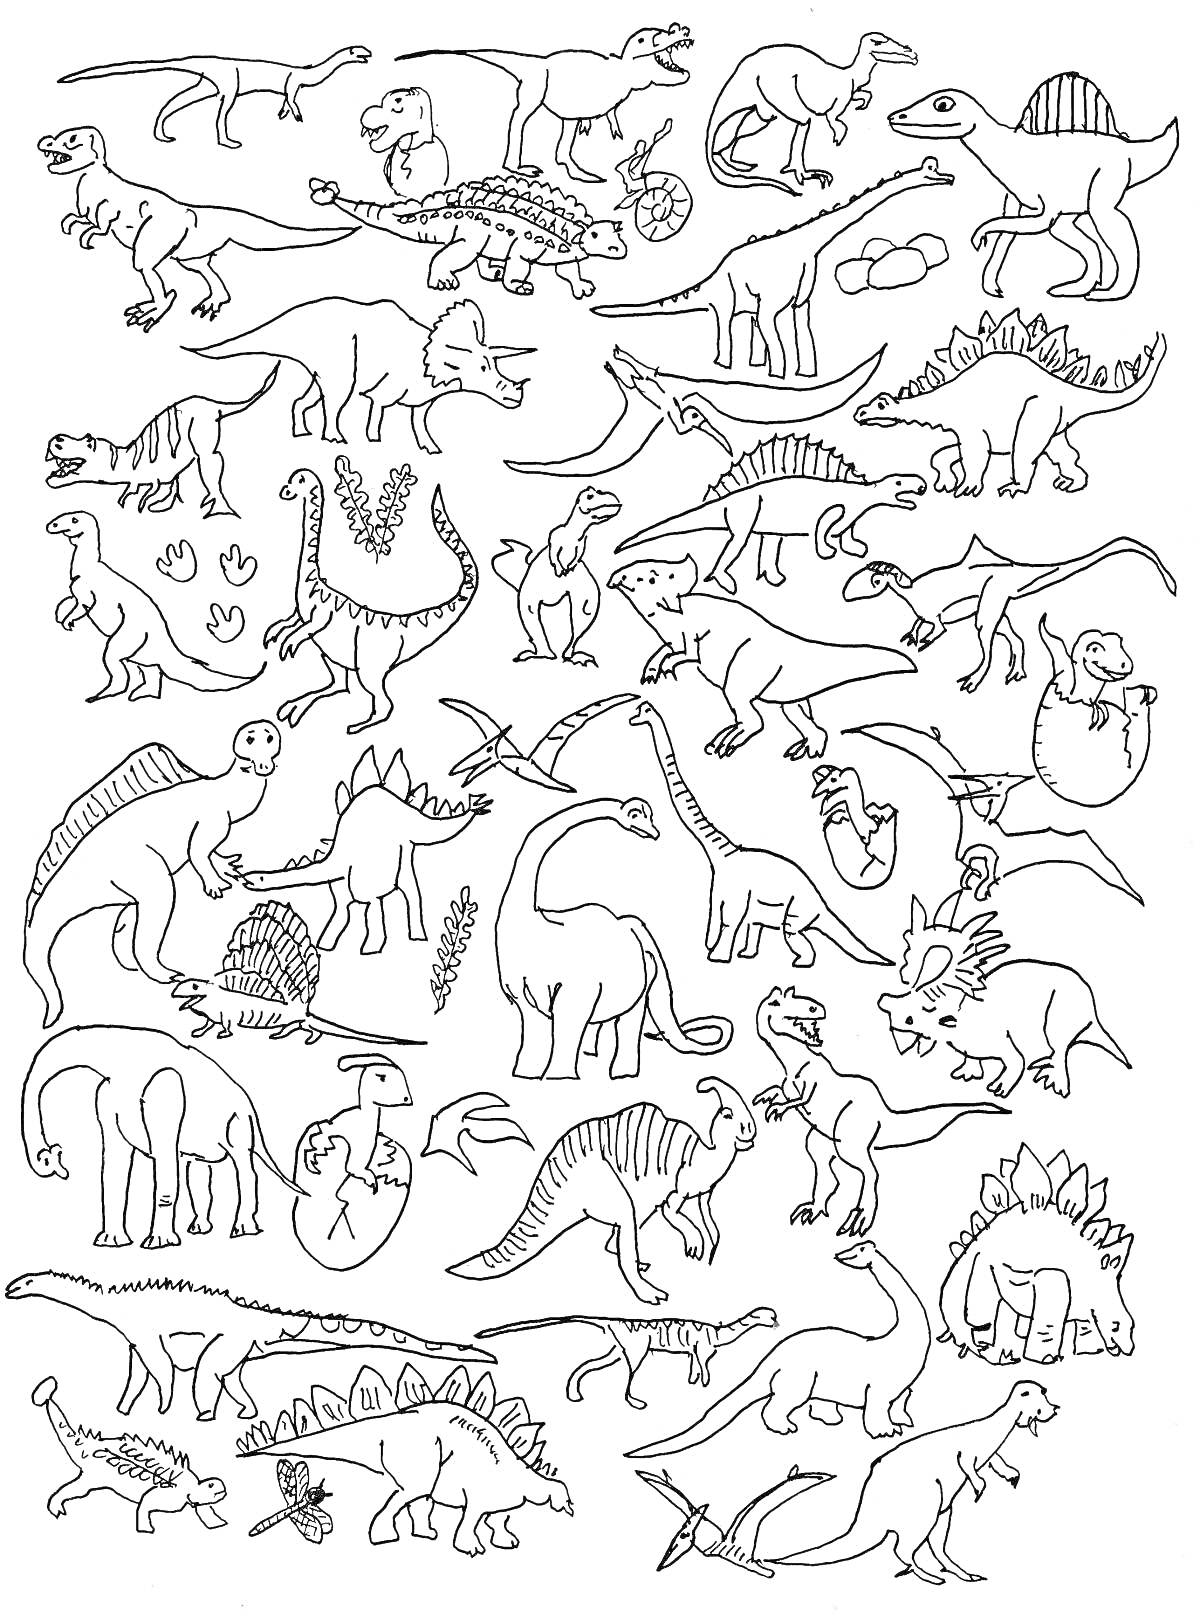 На раскраске изображено: Следы лап, Брахиозавр, Стегозавр, Трицератопс, Апатозавр, Птеродактиль, Анкилозавр, Спинозавр, Растительность